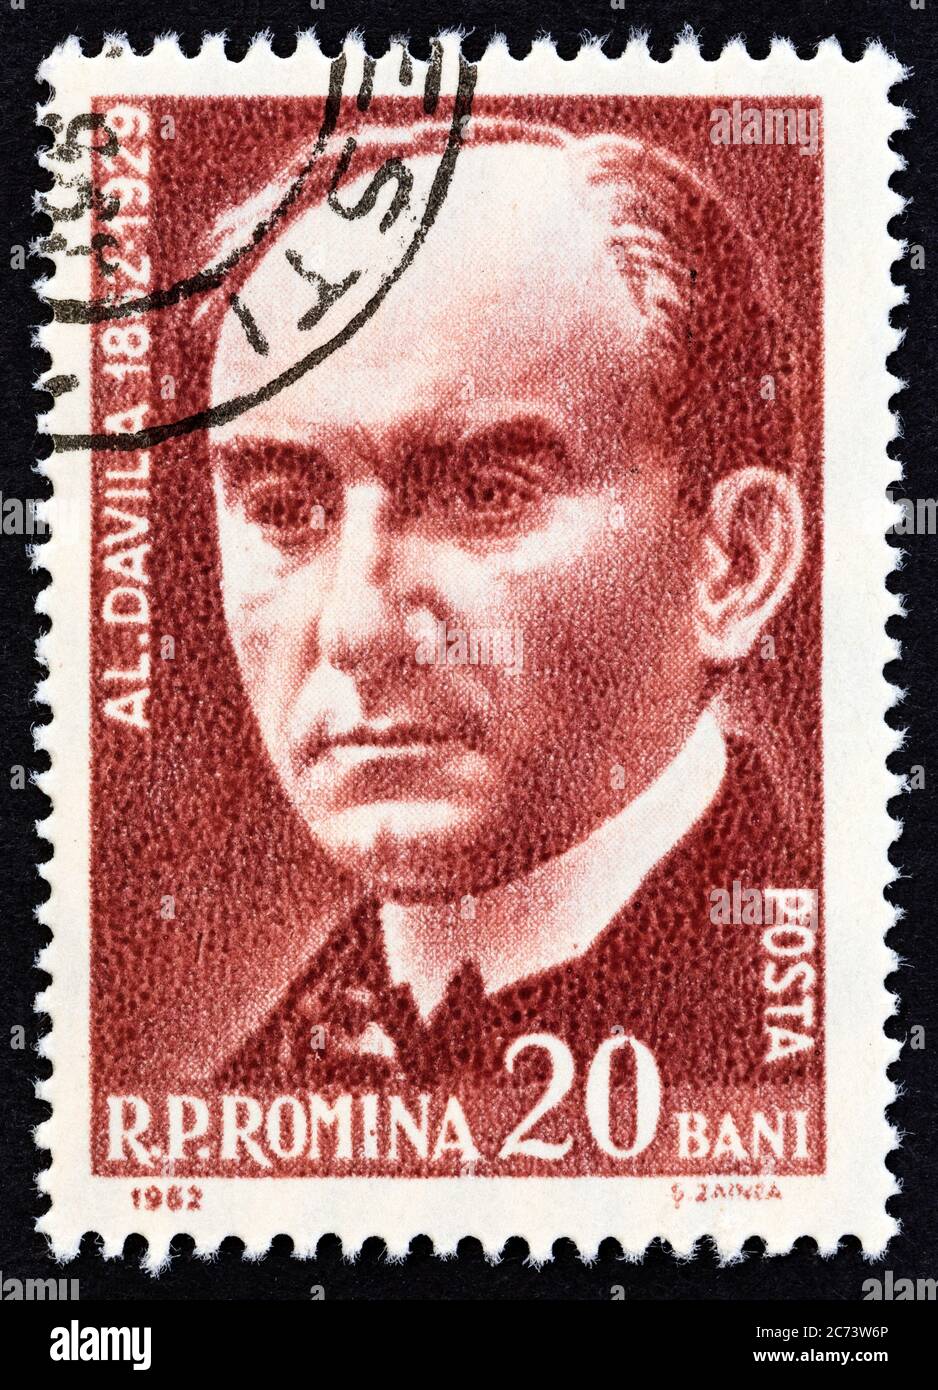 RUMÄNIEN - UM 1962: Eine in Rumänien gedruckte Briefmarke zeigt Alexandru Davila, Schriftsteller, um 1962. Stockfoto